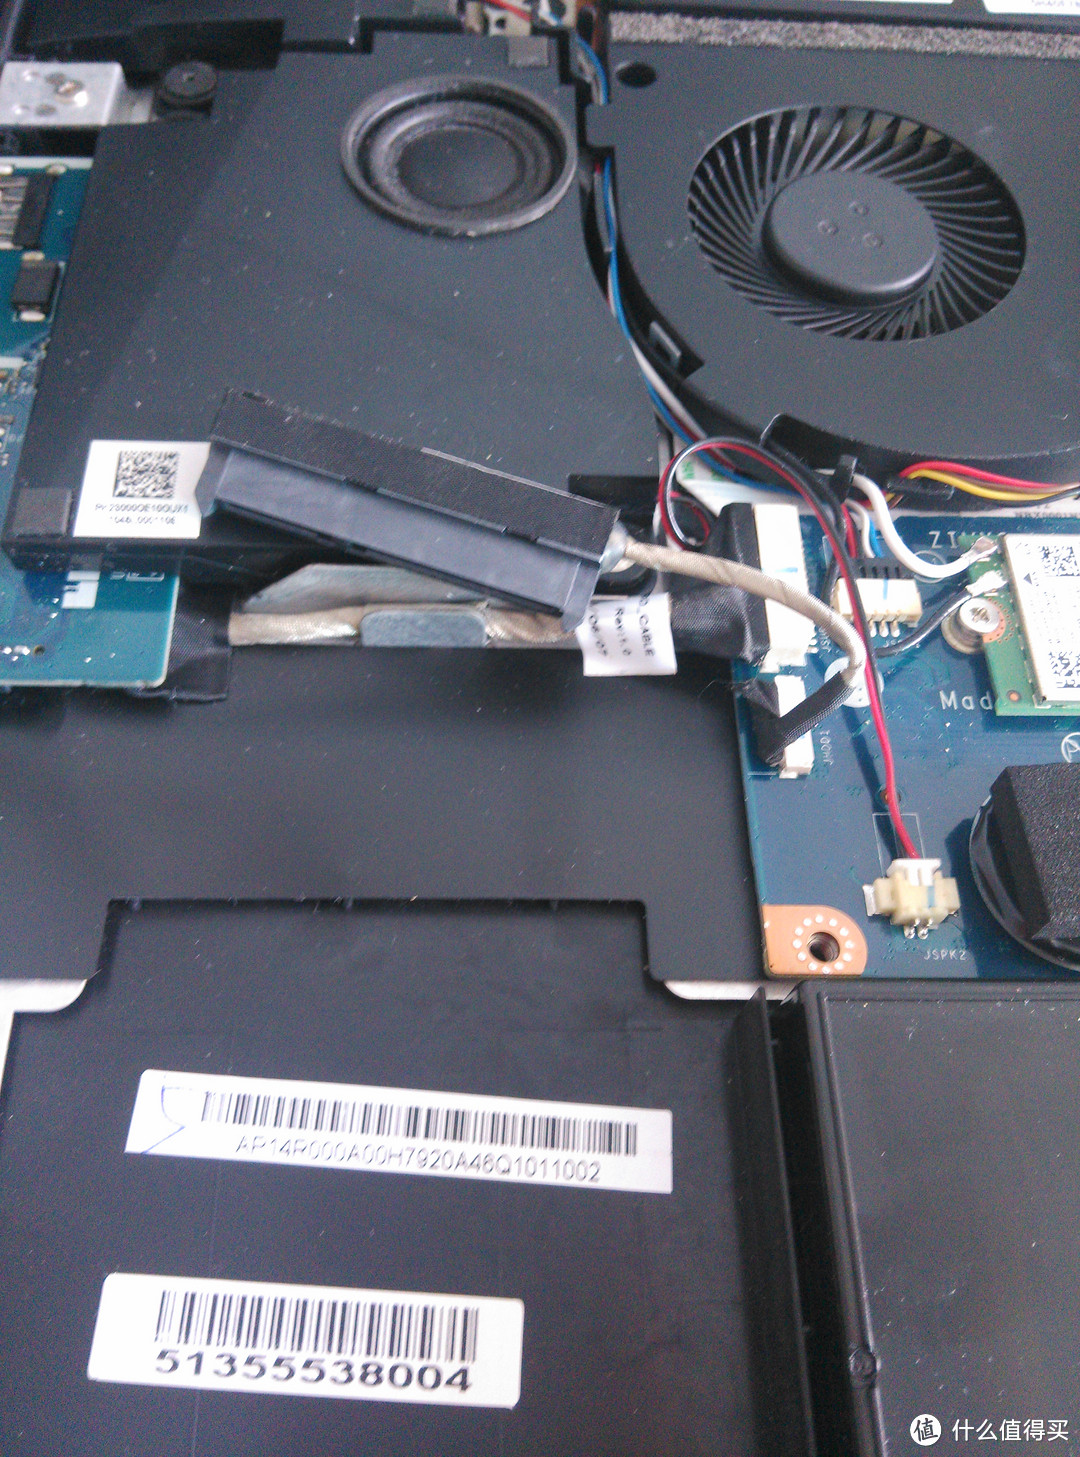 Lenovo 联想 Y50-70 笔记本电脑 换固态硬盘及元谷 PD2500S6G硬盘盒使用感受